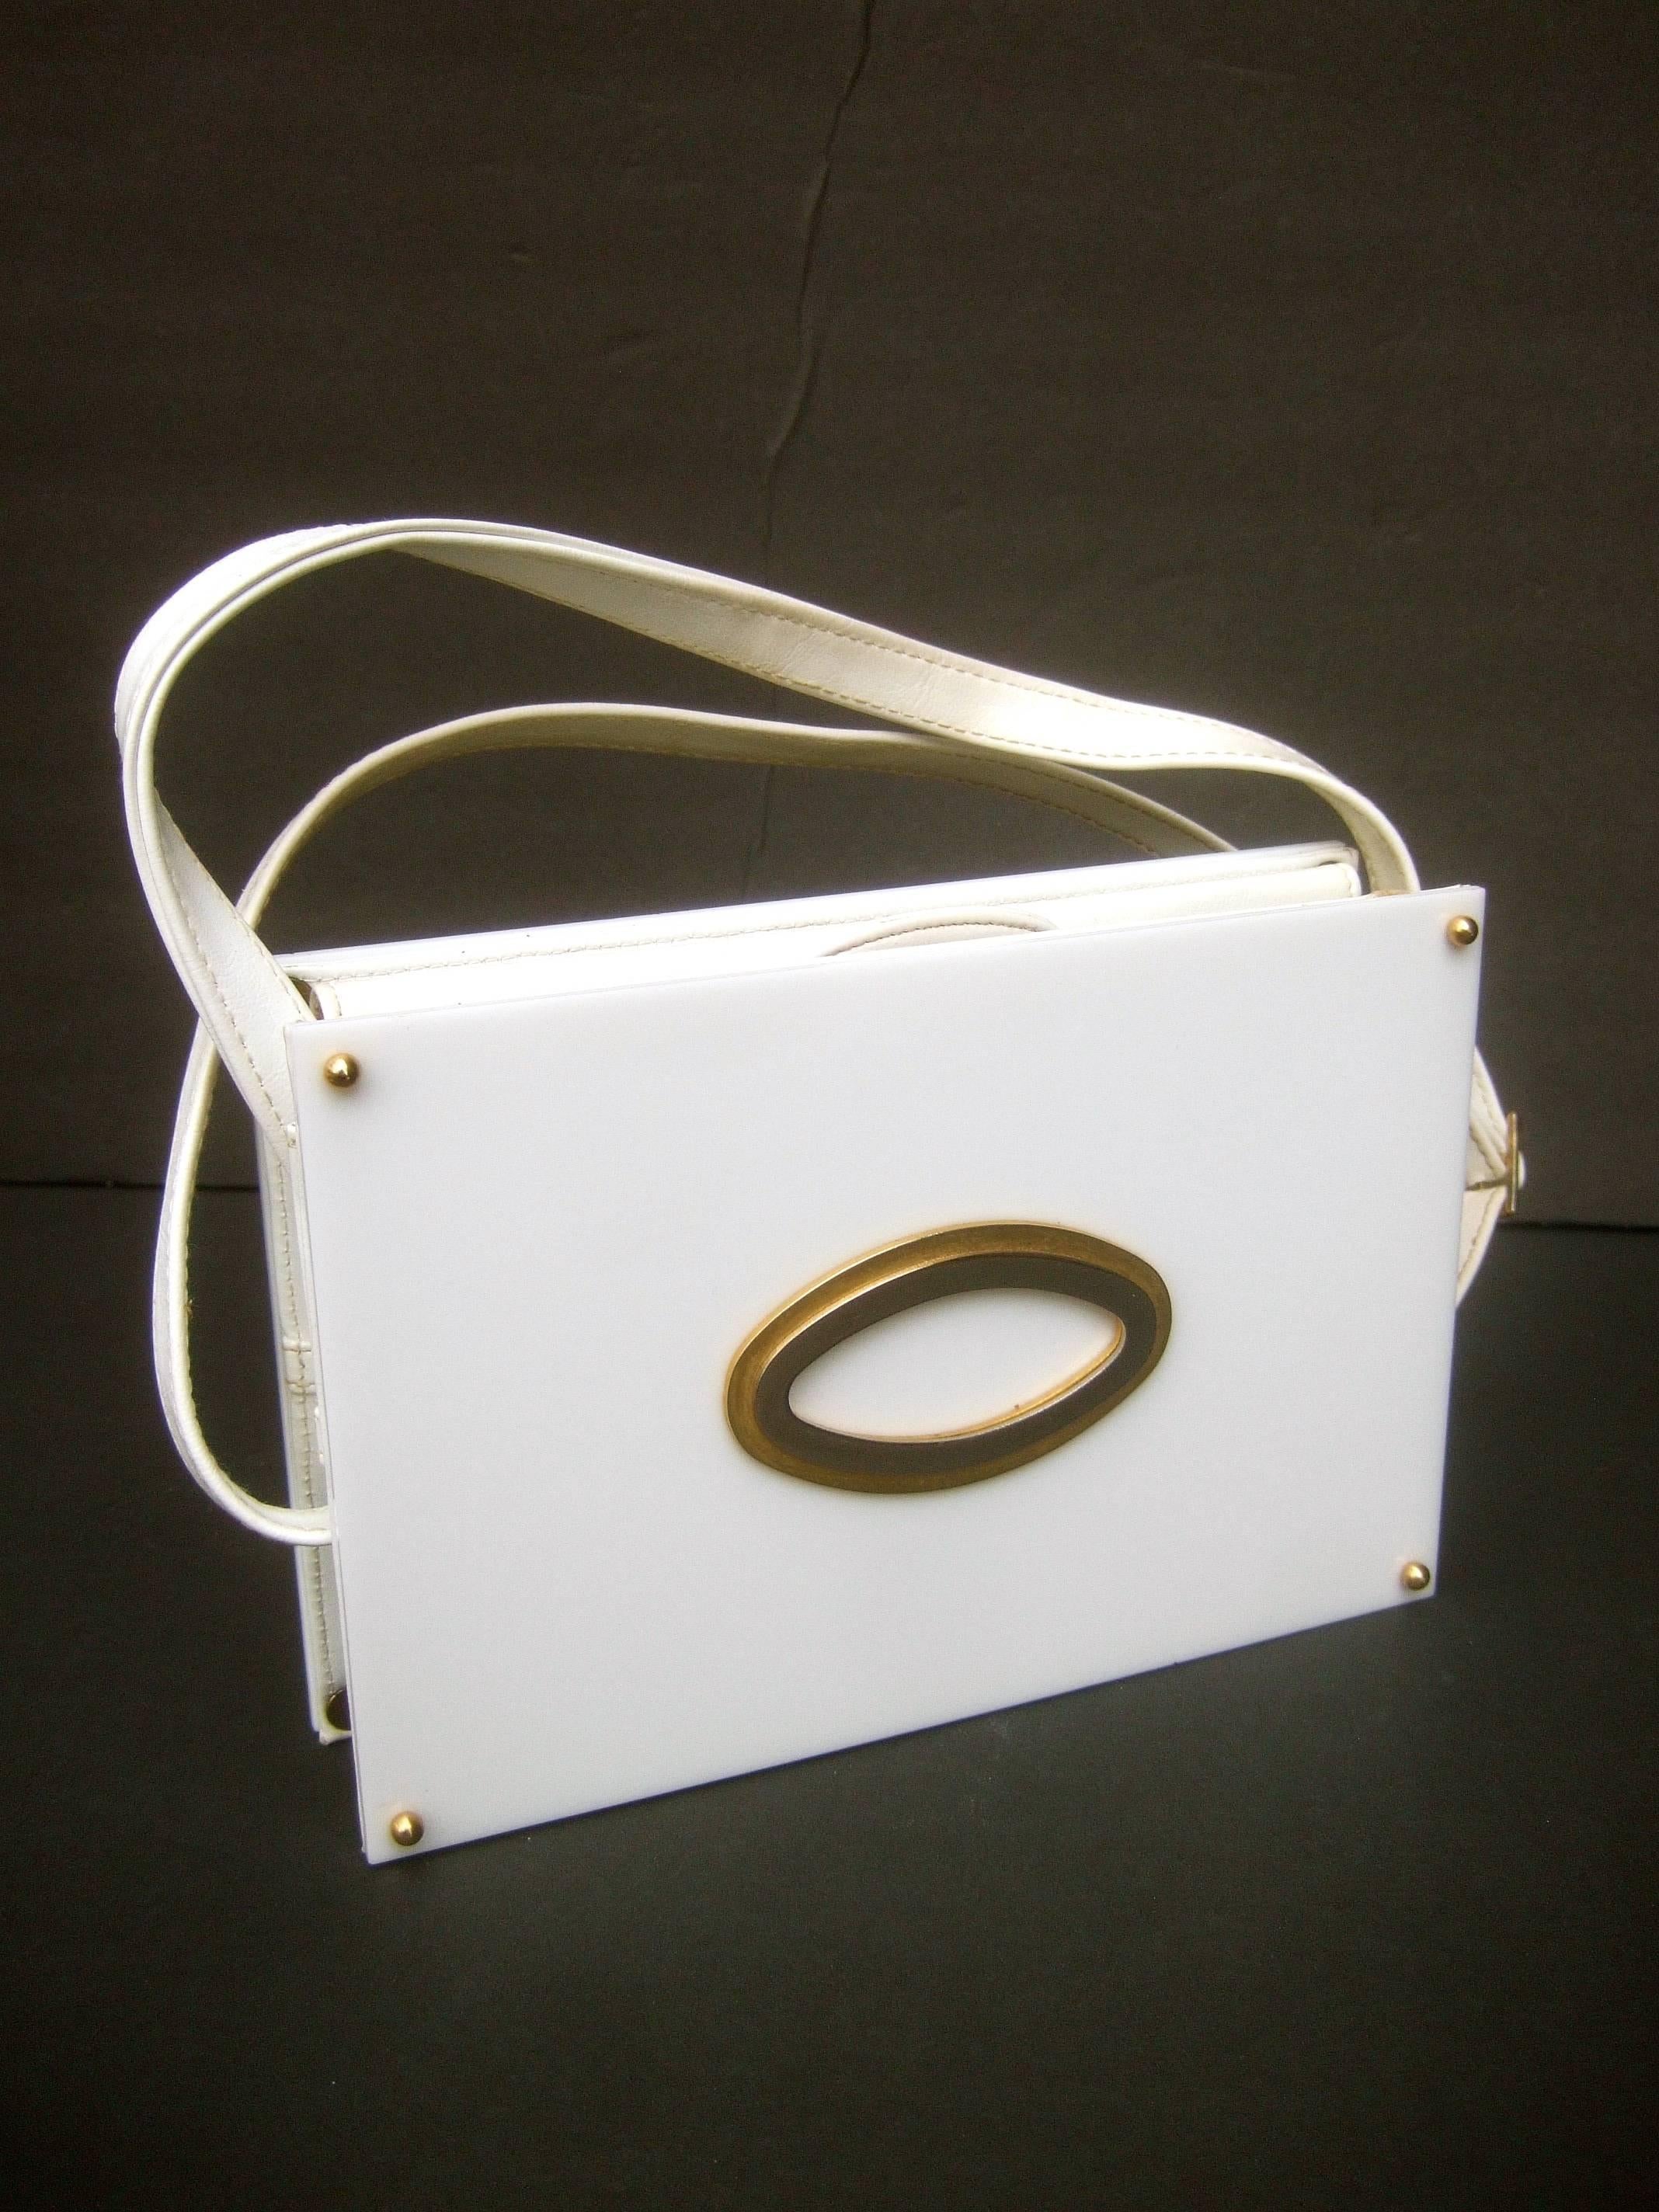 A.I.C.C. sac à main à carreaux en lucite blanc de Saks Fifth Avenue, c. années 1970
Le sac à main rétro élégant est conçu avec une paire de 
de panneaux rectangulaires en lucite blanche sur les deux 
faces extérieures avant et arrière

Le panneau